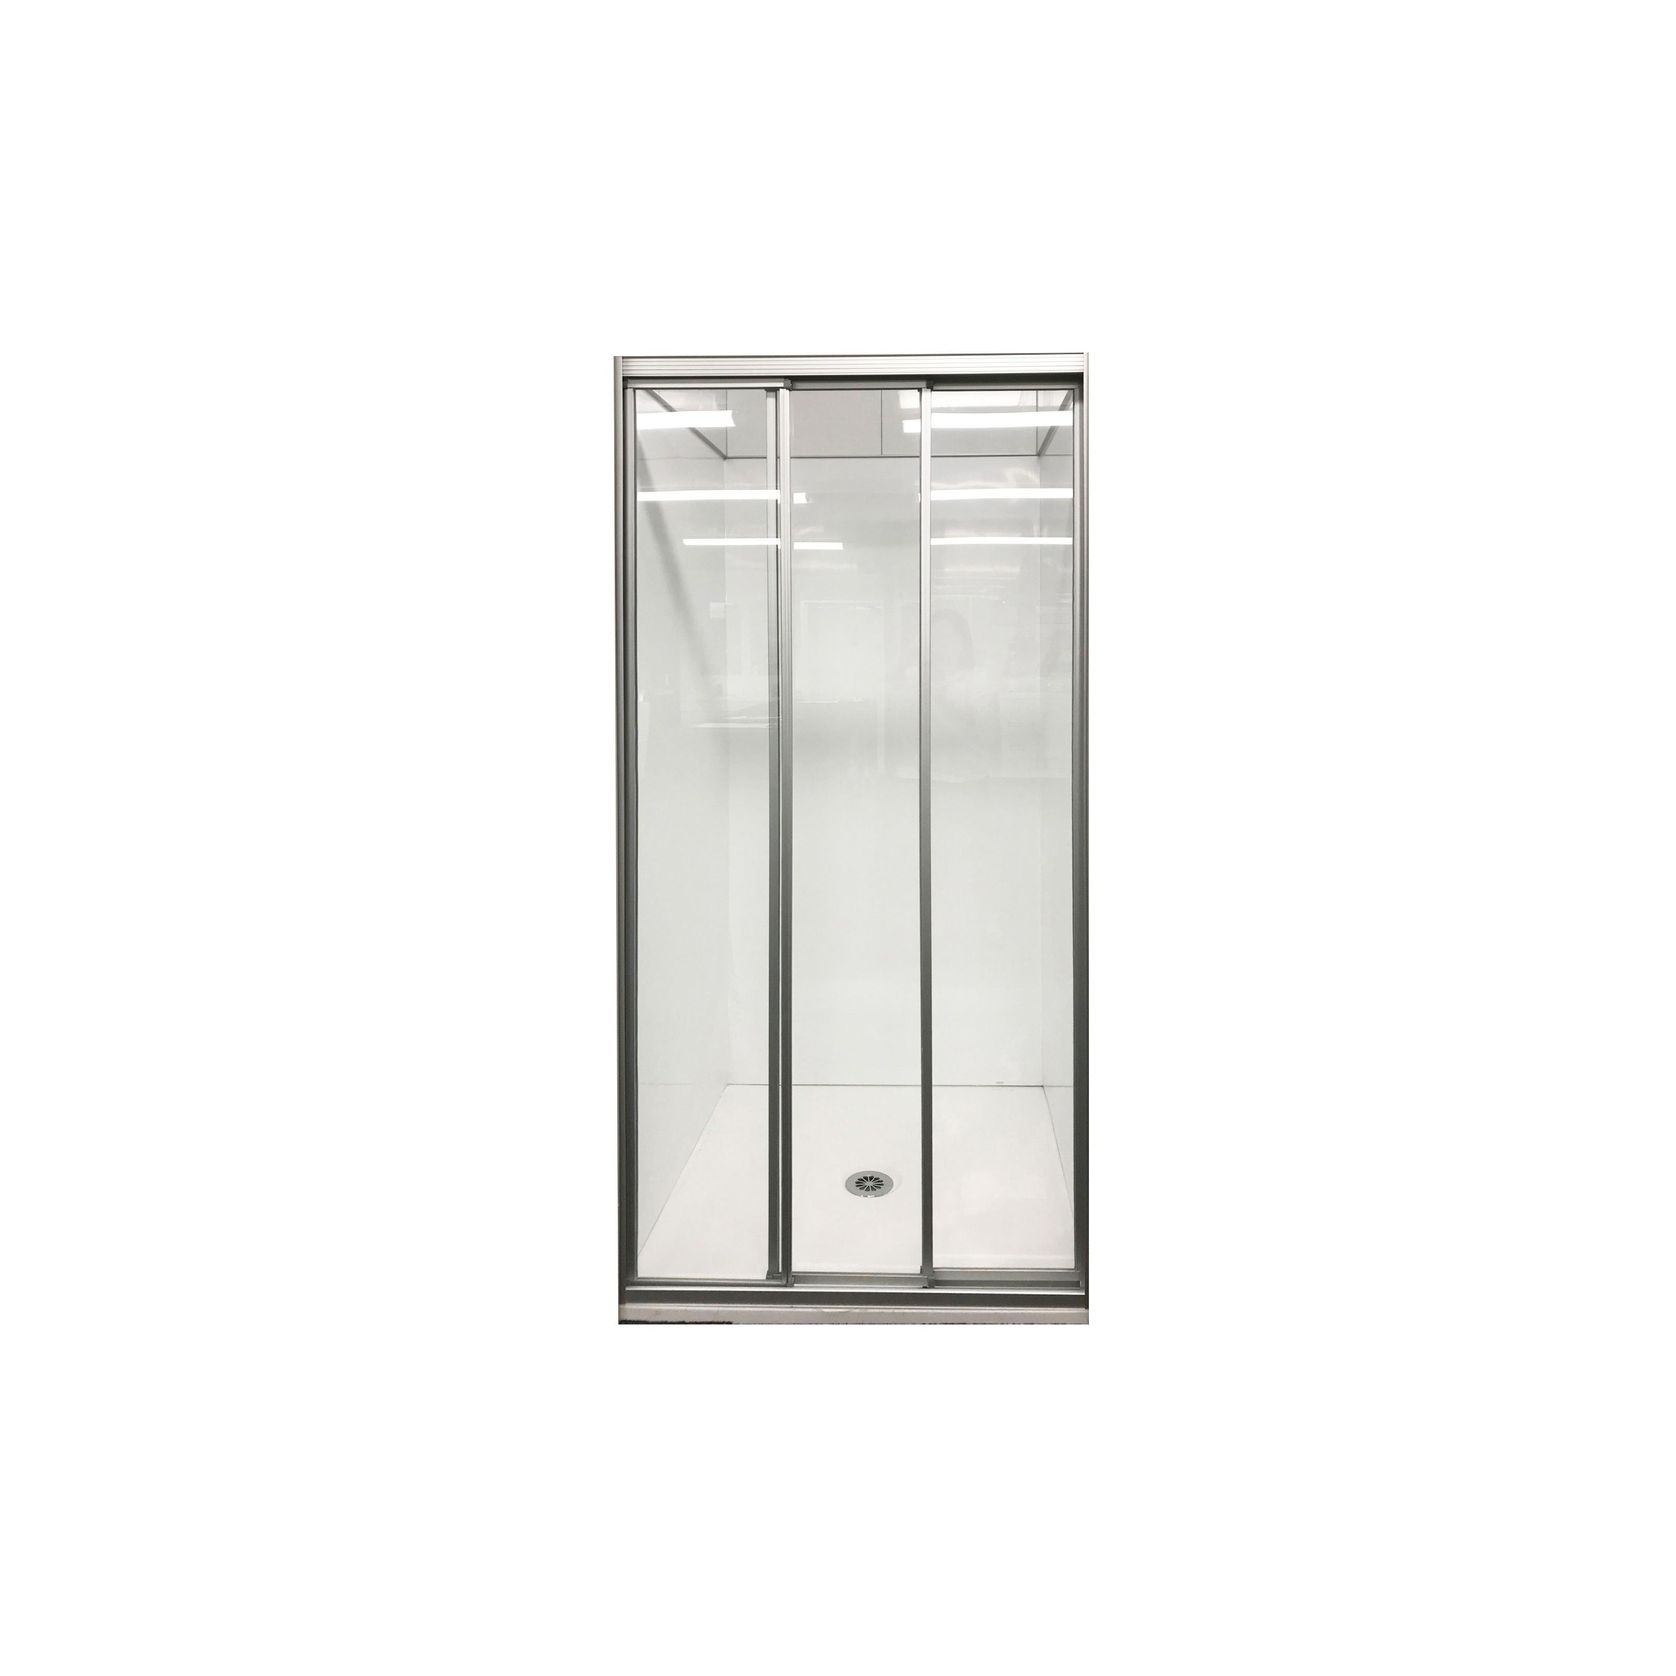 Framed 3 Panel Slider Shower Door gallery detail image